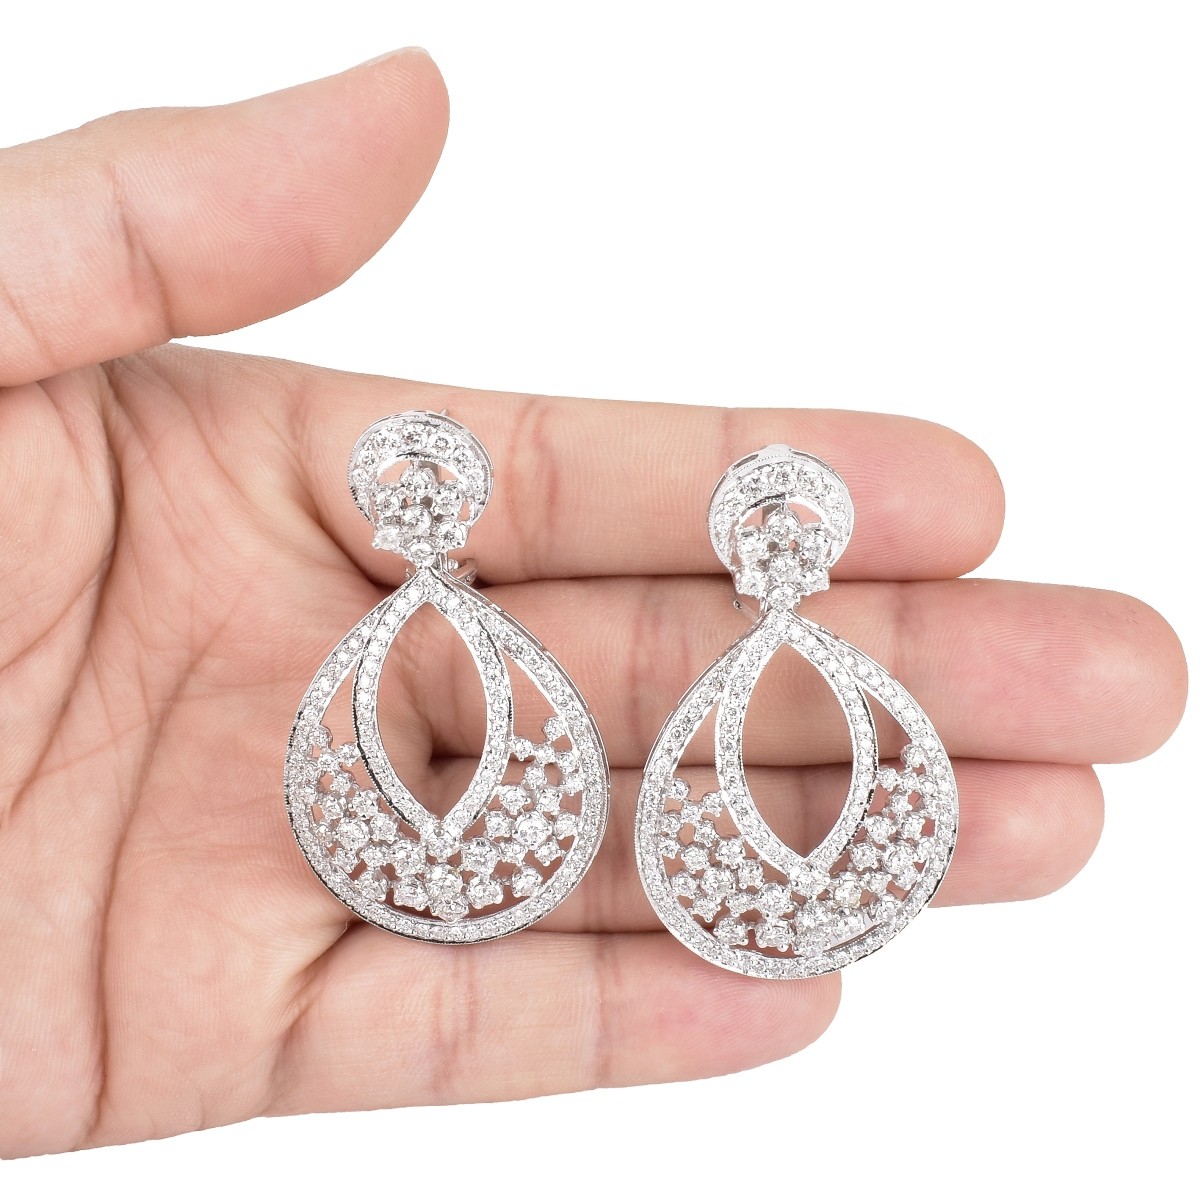 Van Cleef & Arpels style Diamond Earrings